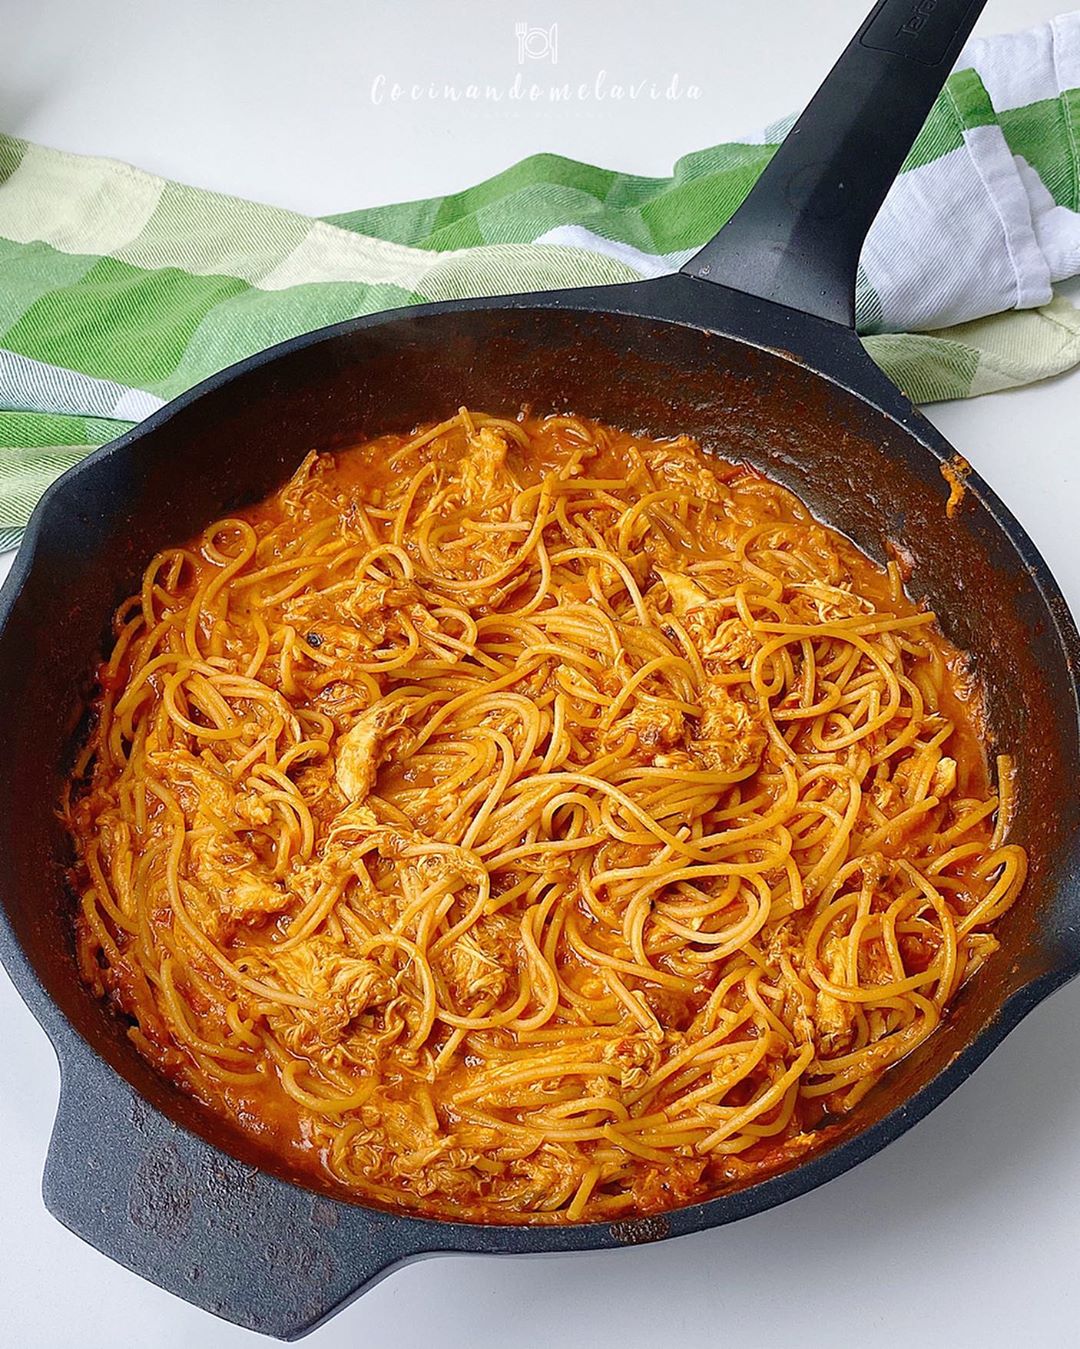 espaguetis con crema de tomate y pollo “a la sartén”